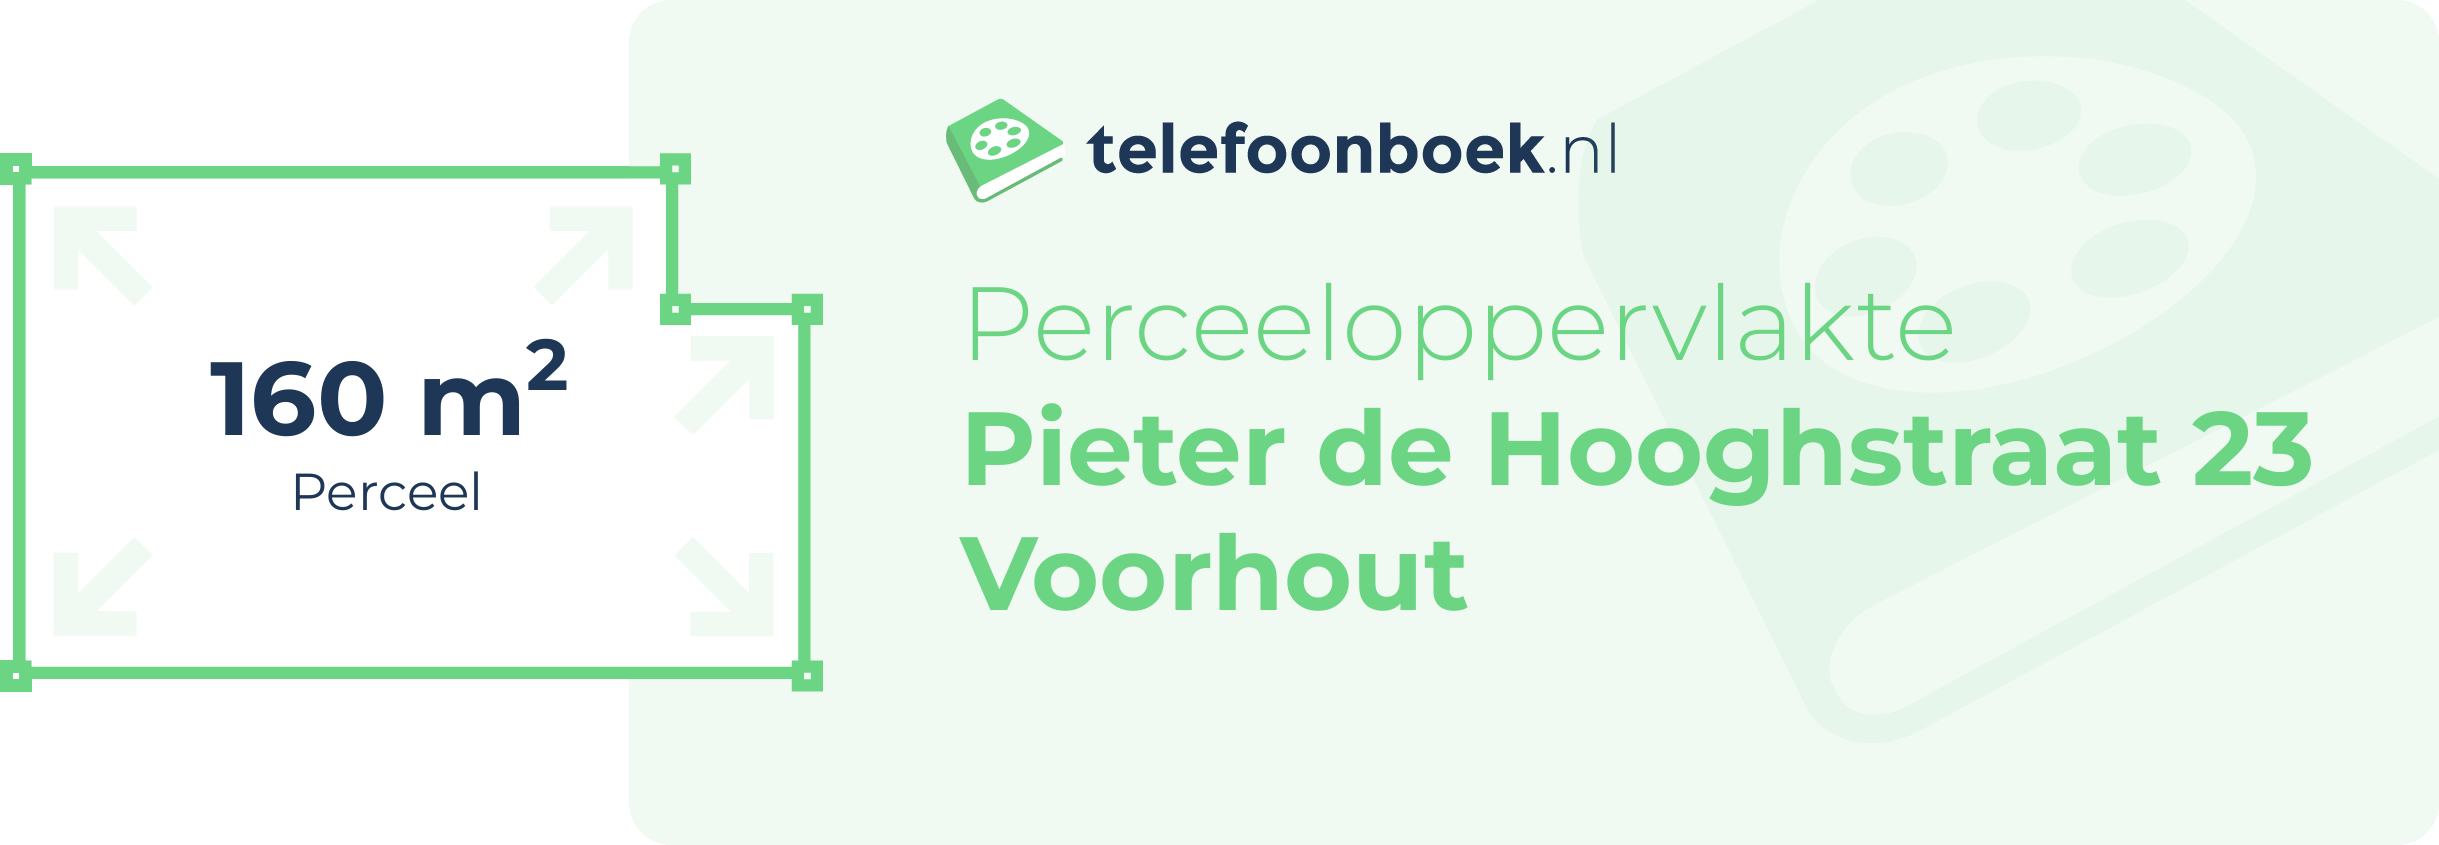 Perceeloppervlakte Pieter De Hooghstraat 23 Voorhout